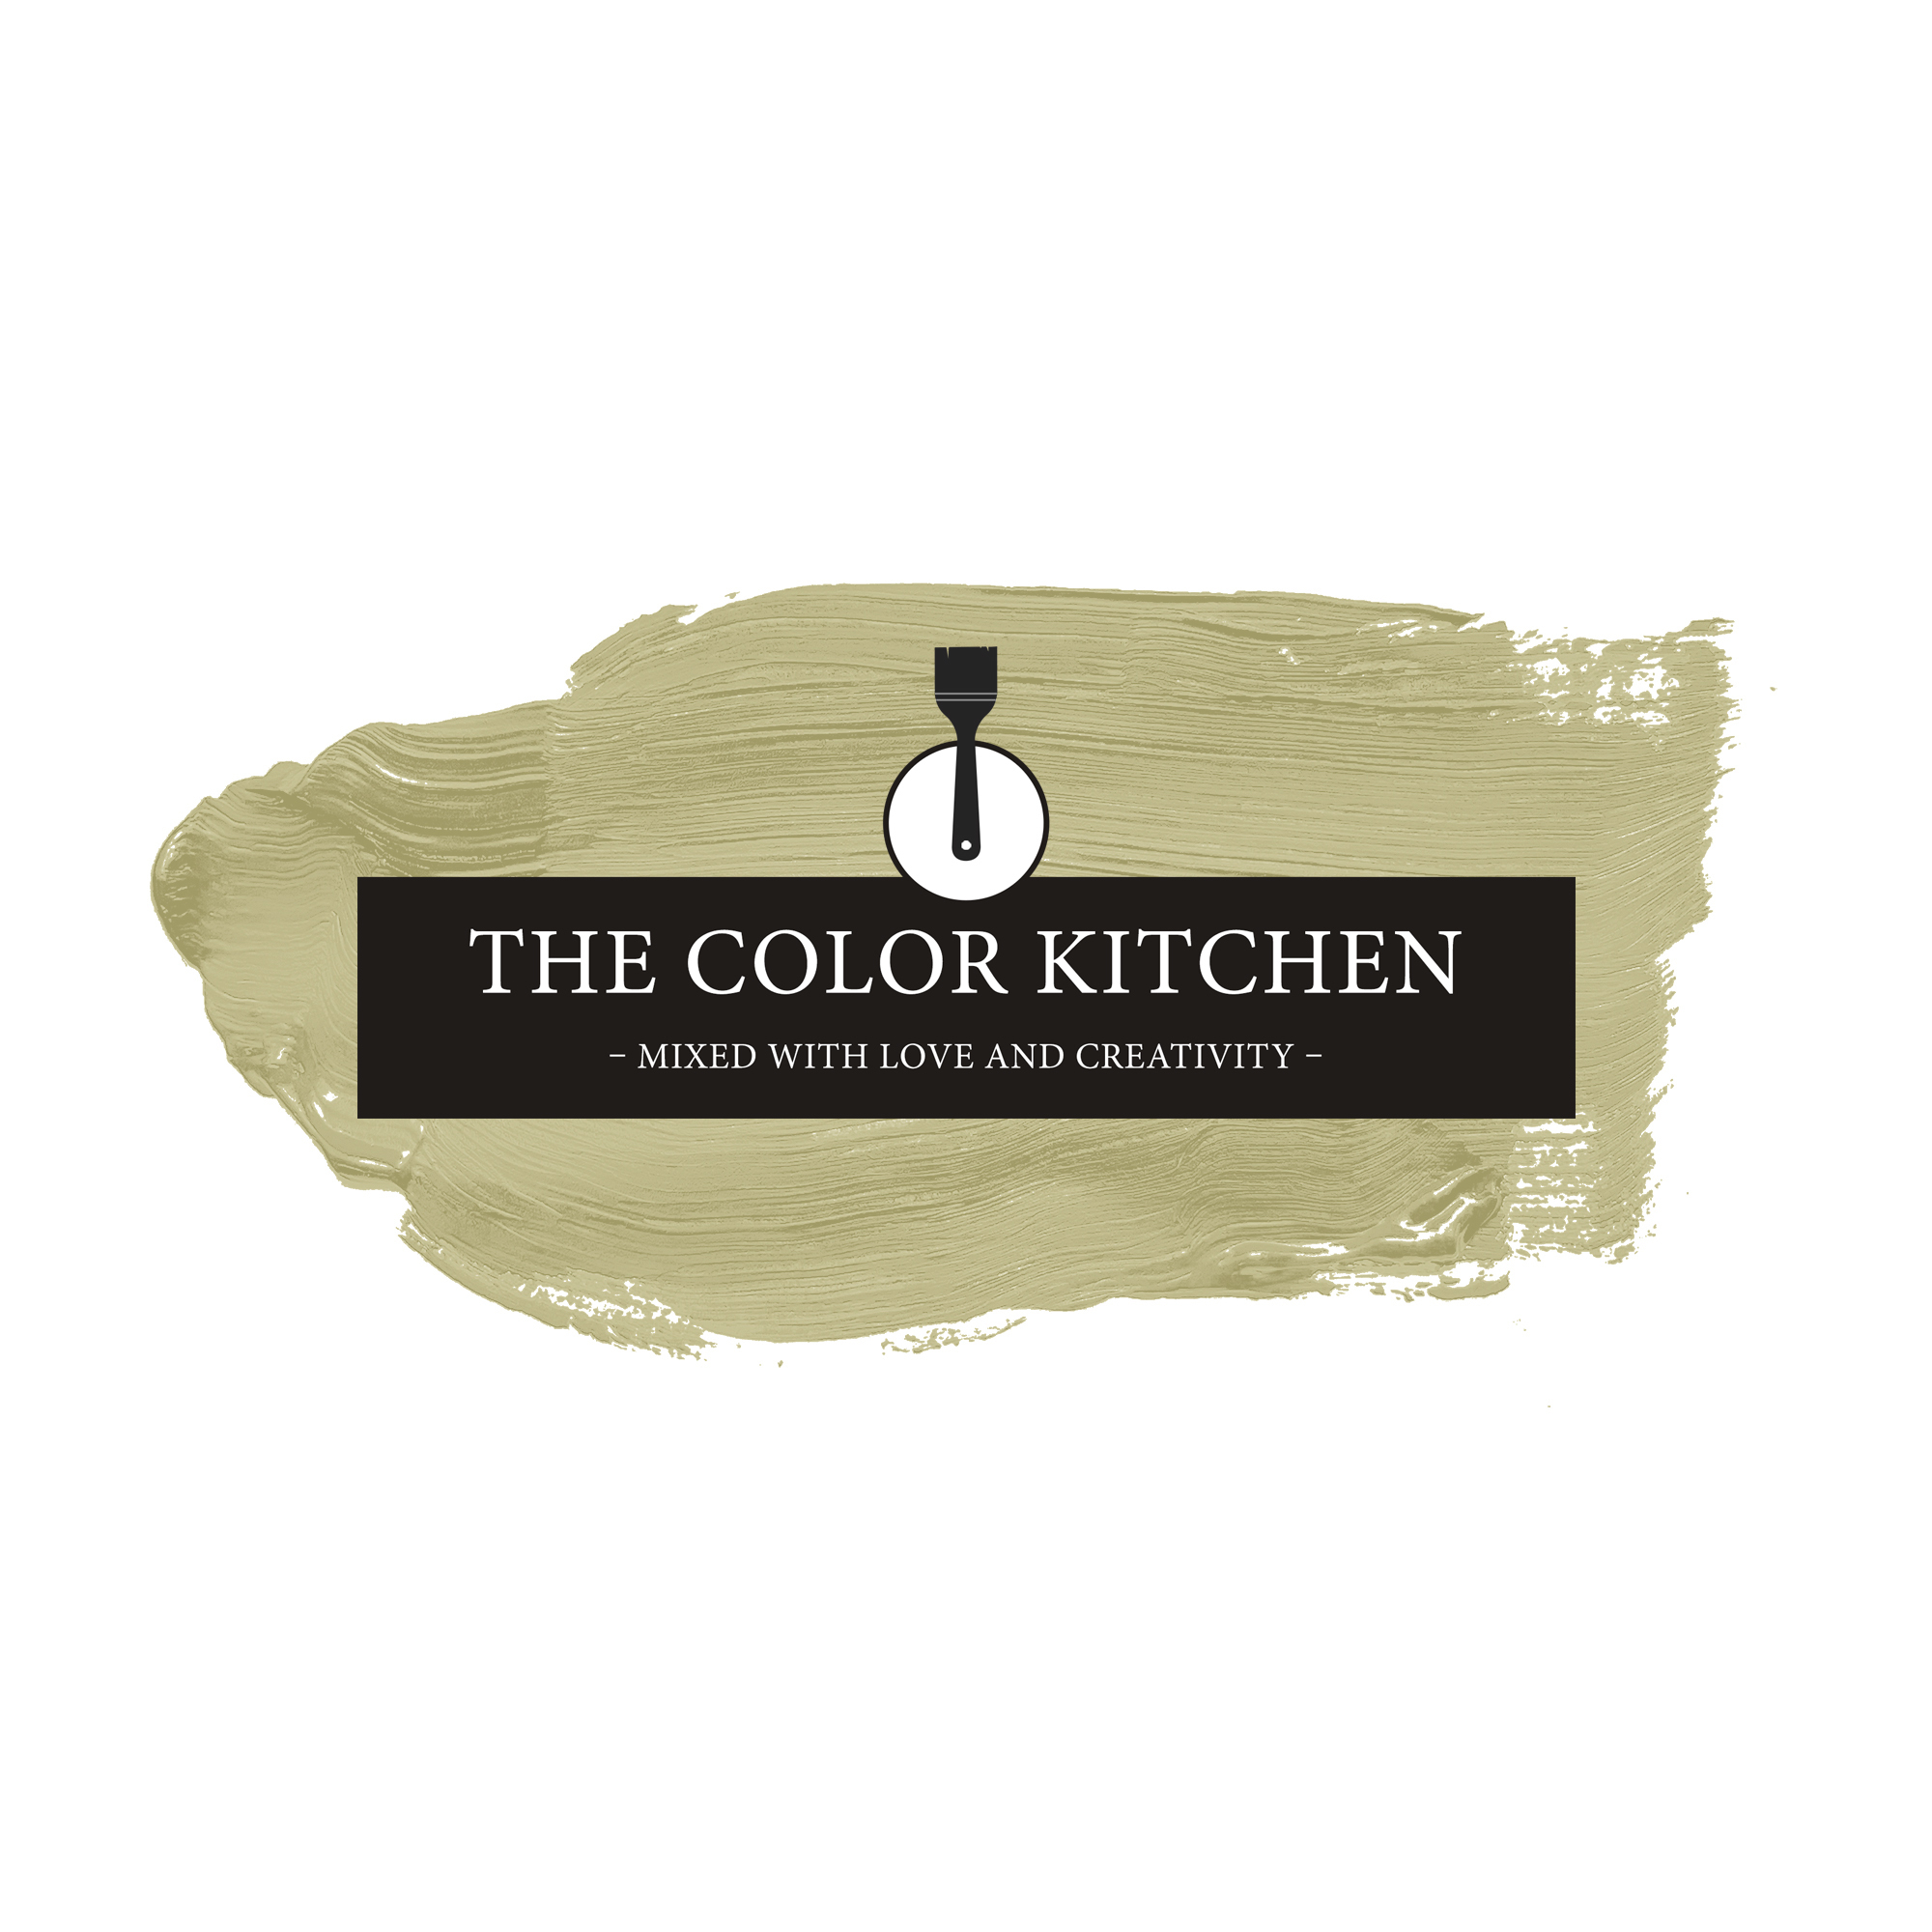 The Color Kitchen Mellow Matcha 2,5 l